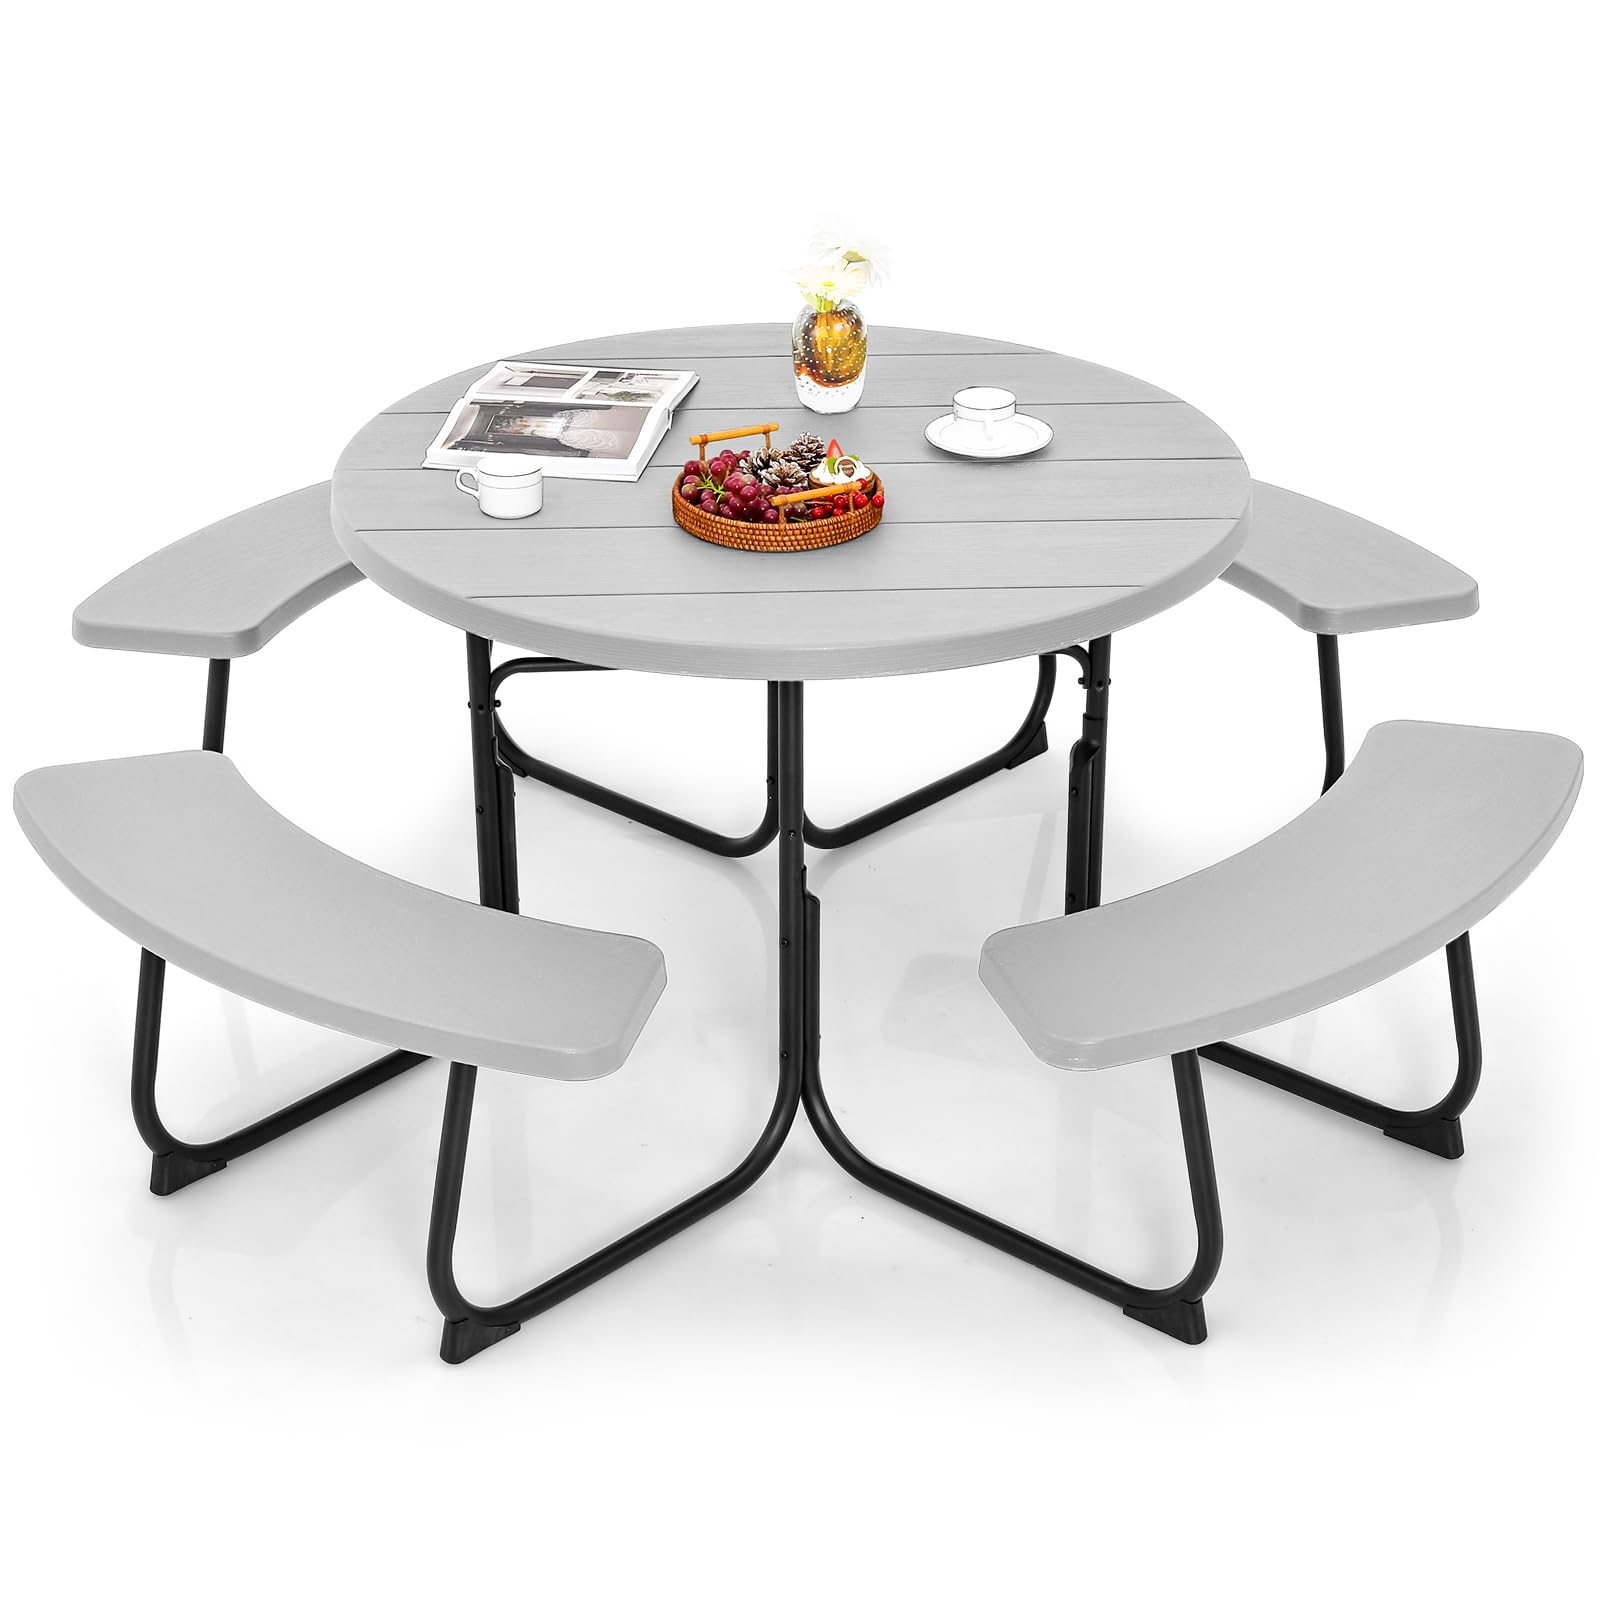 Giantex Picnic Table Set